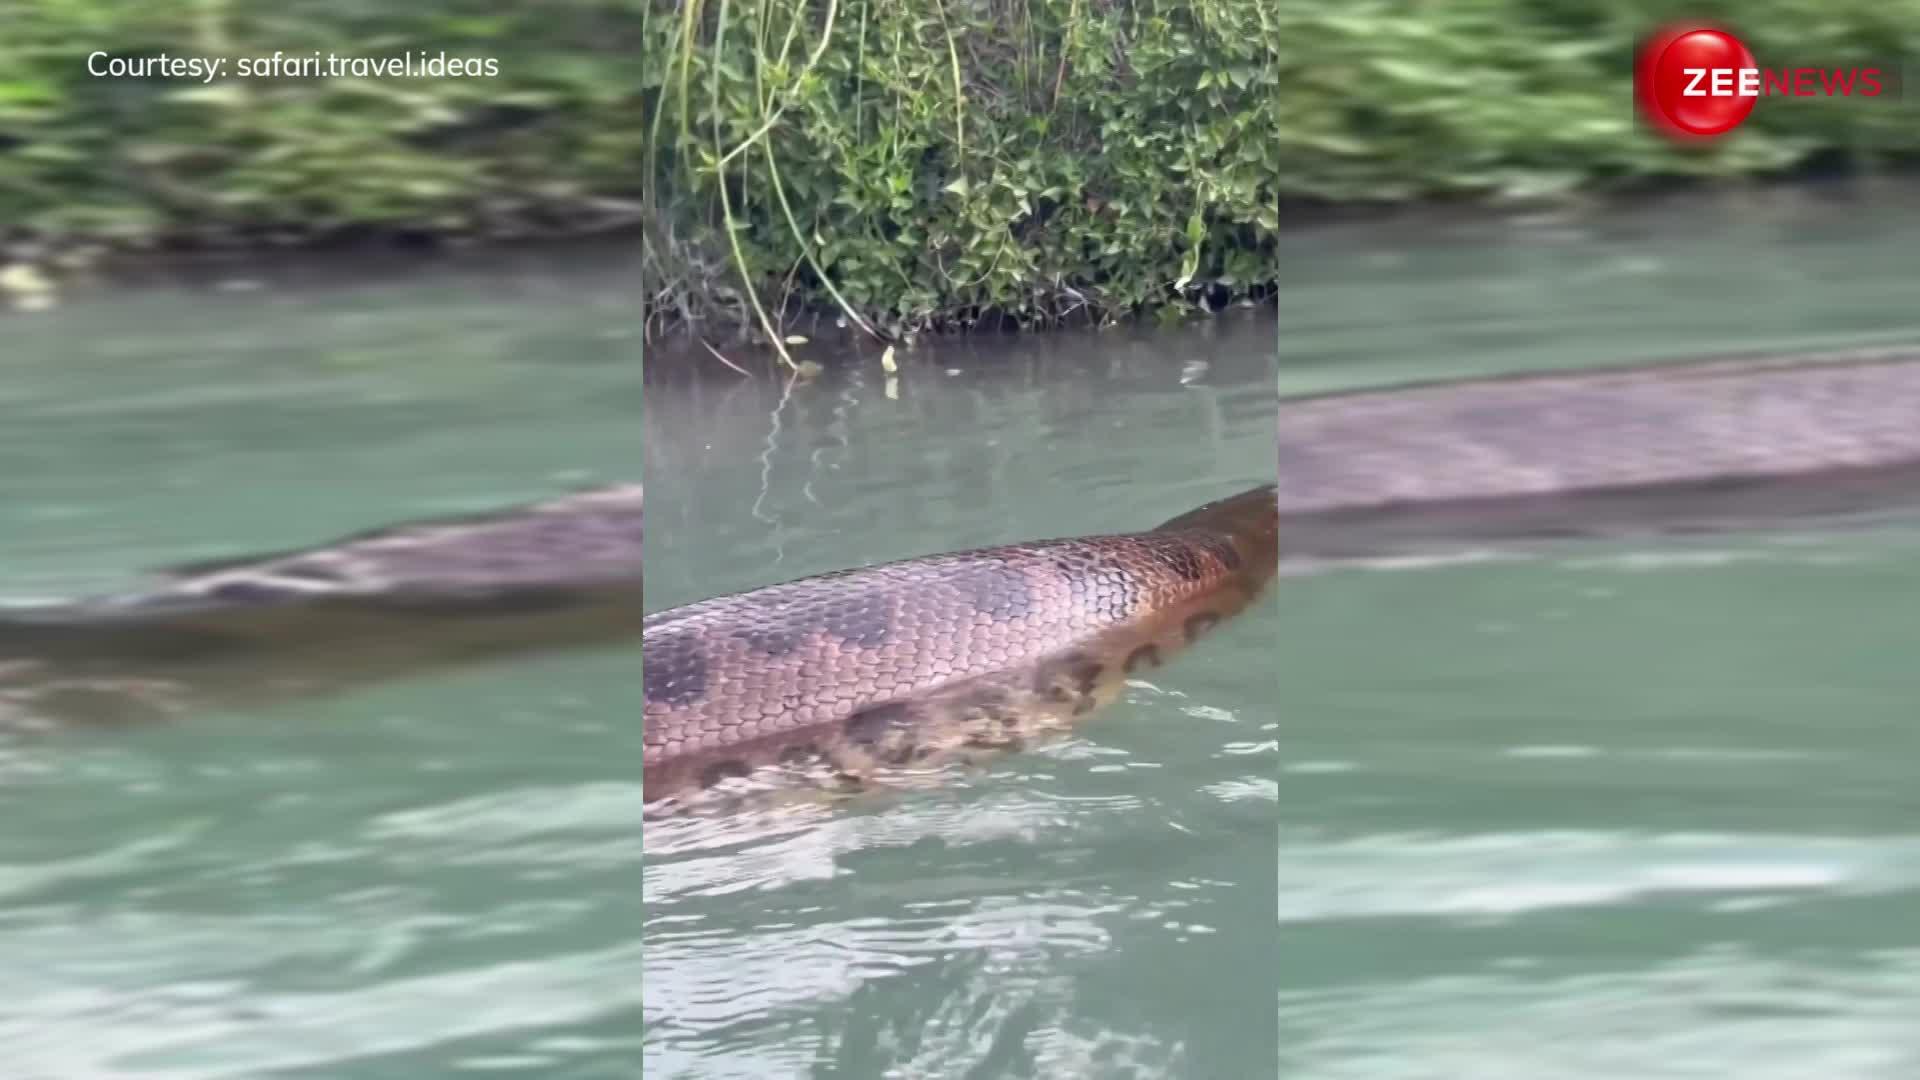 Anaconda Video: पानी में स्विमिंग कर रहा था शख्स कि सामने दिख गया विशाल एनाकोंडा, वीडियो देख हिल गया जनता का दिमाग